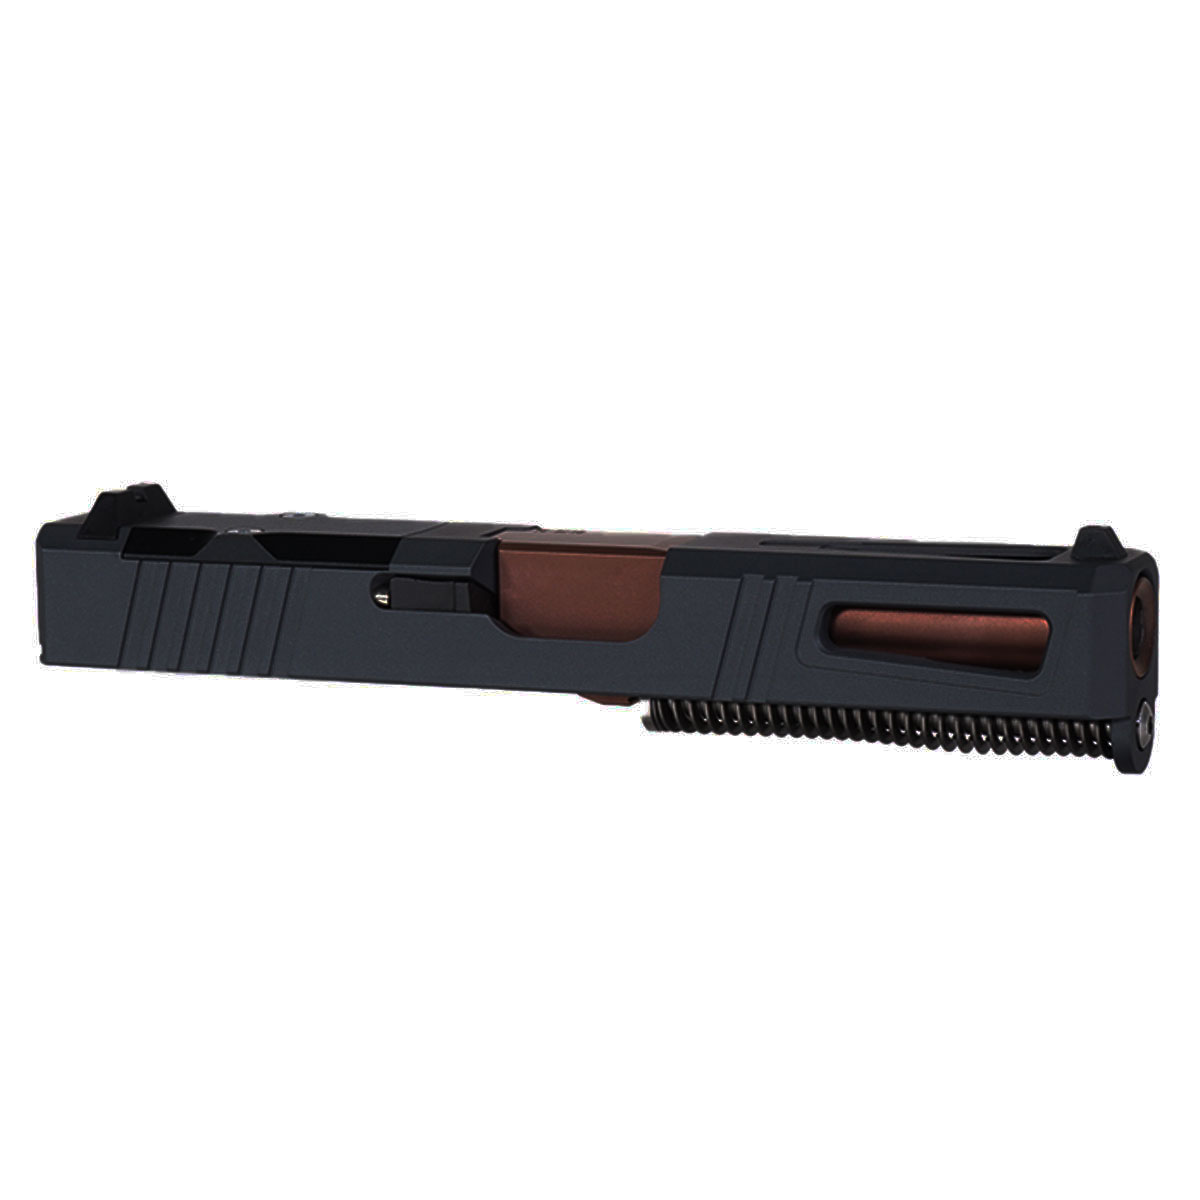 OTD 'Neptune' 9mm Complete Slide Kit - Glock 19 Gen 1-3 Compatible